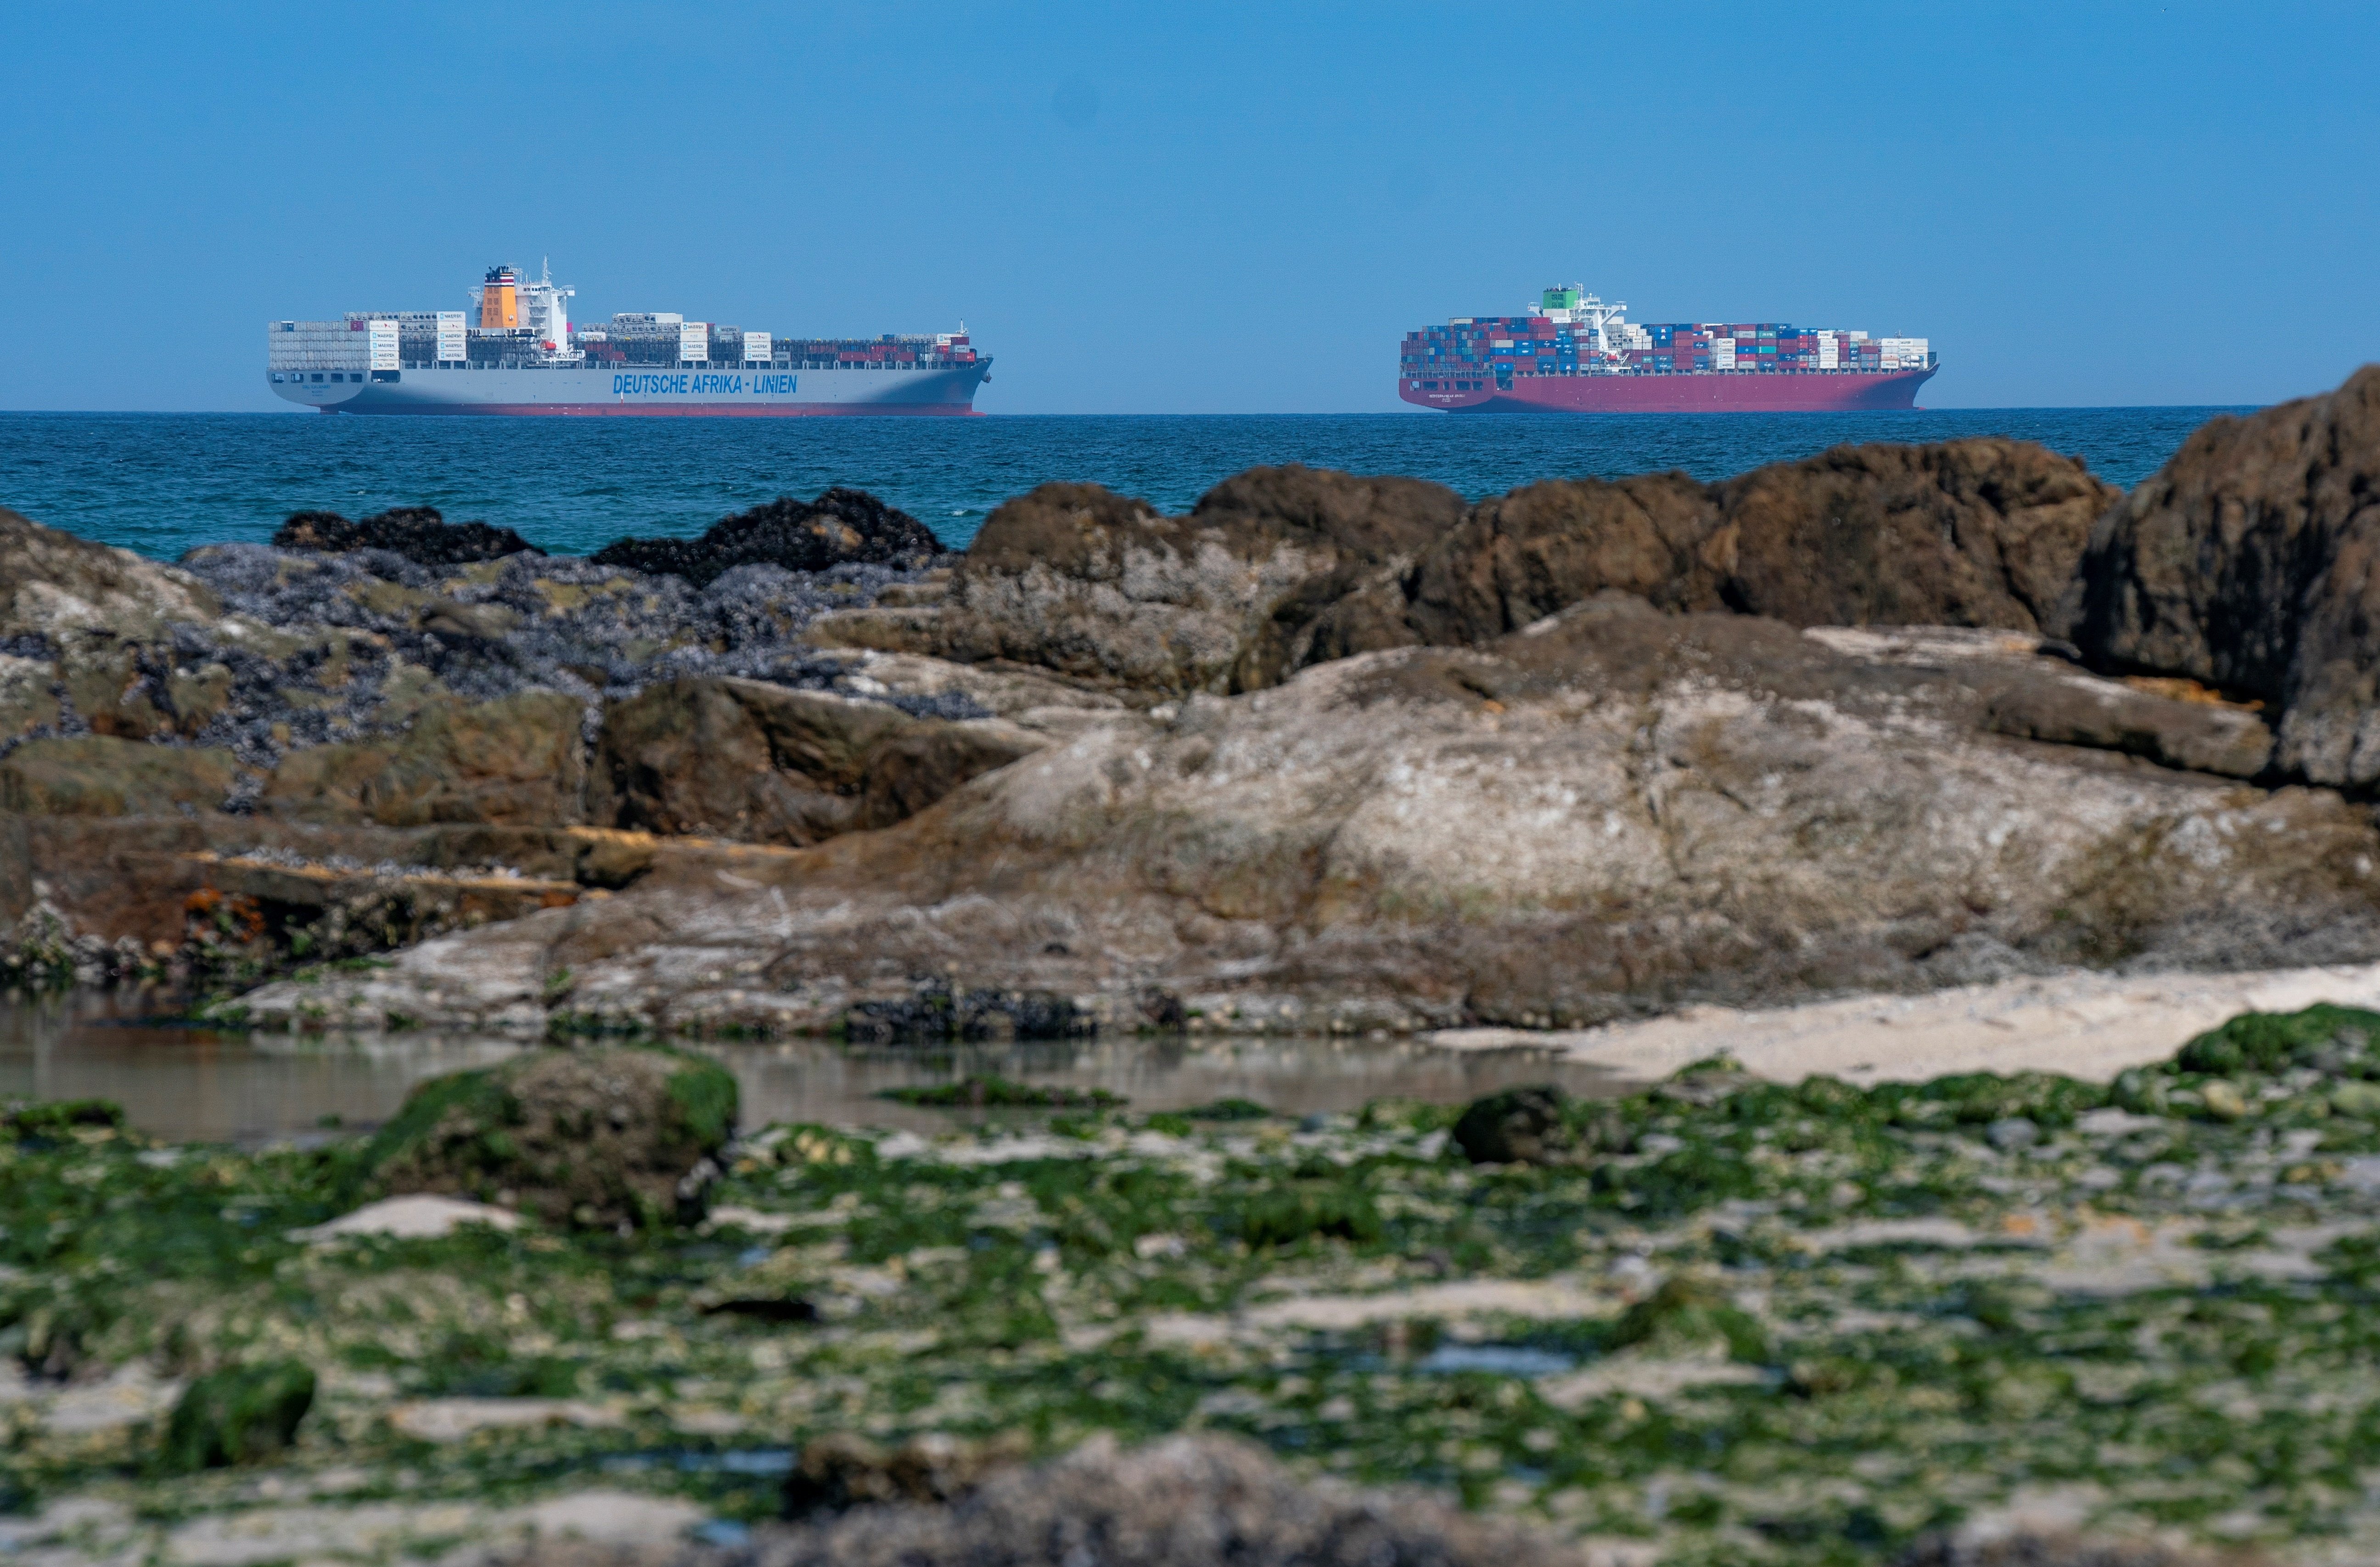 El port de Barcelona es prepara per al trànsit després de la reobertura de Suez